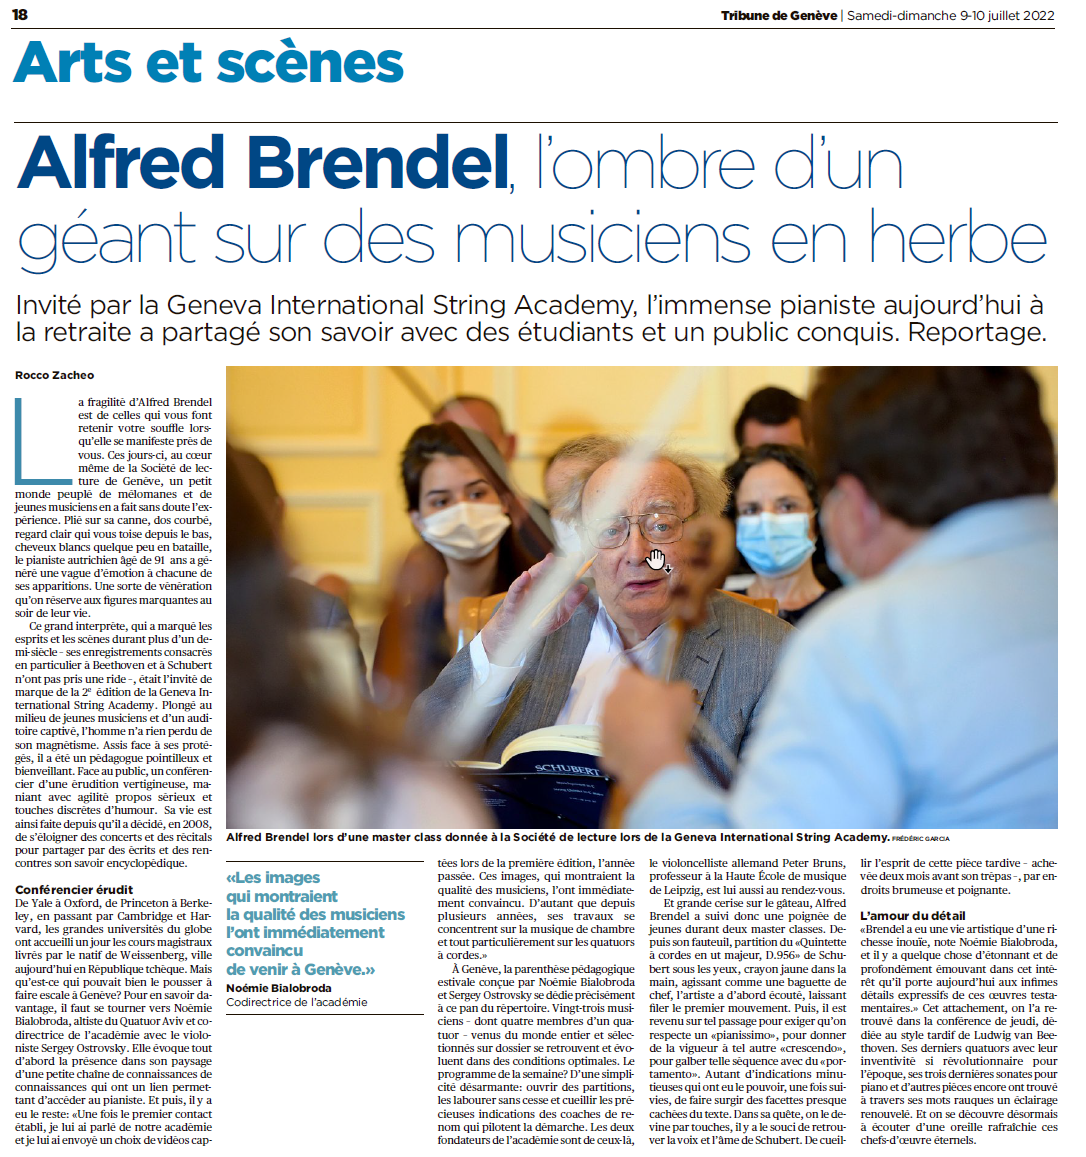 Invité d'honneur Maestro Alfred BRENDEL - La Tribune de Genève 9 juillet 2022